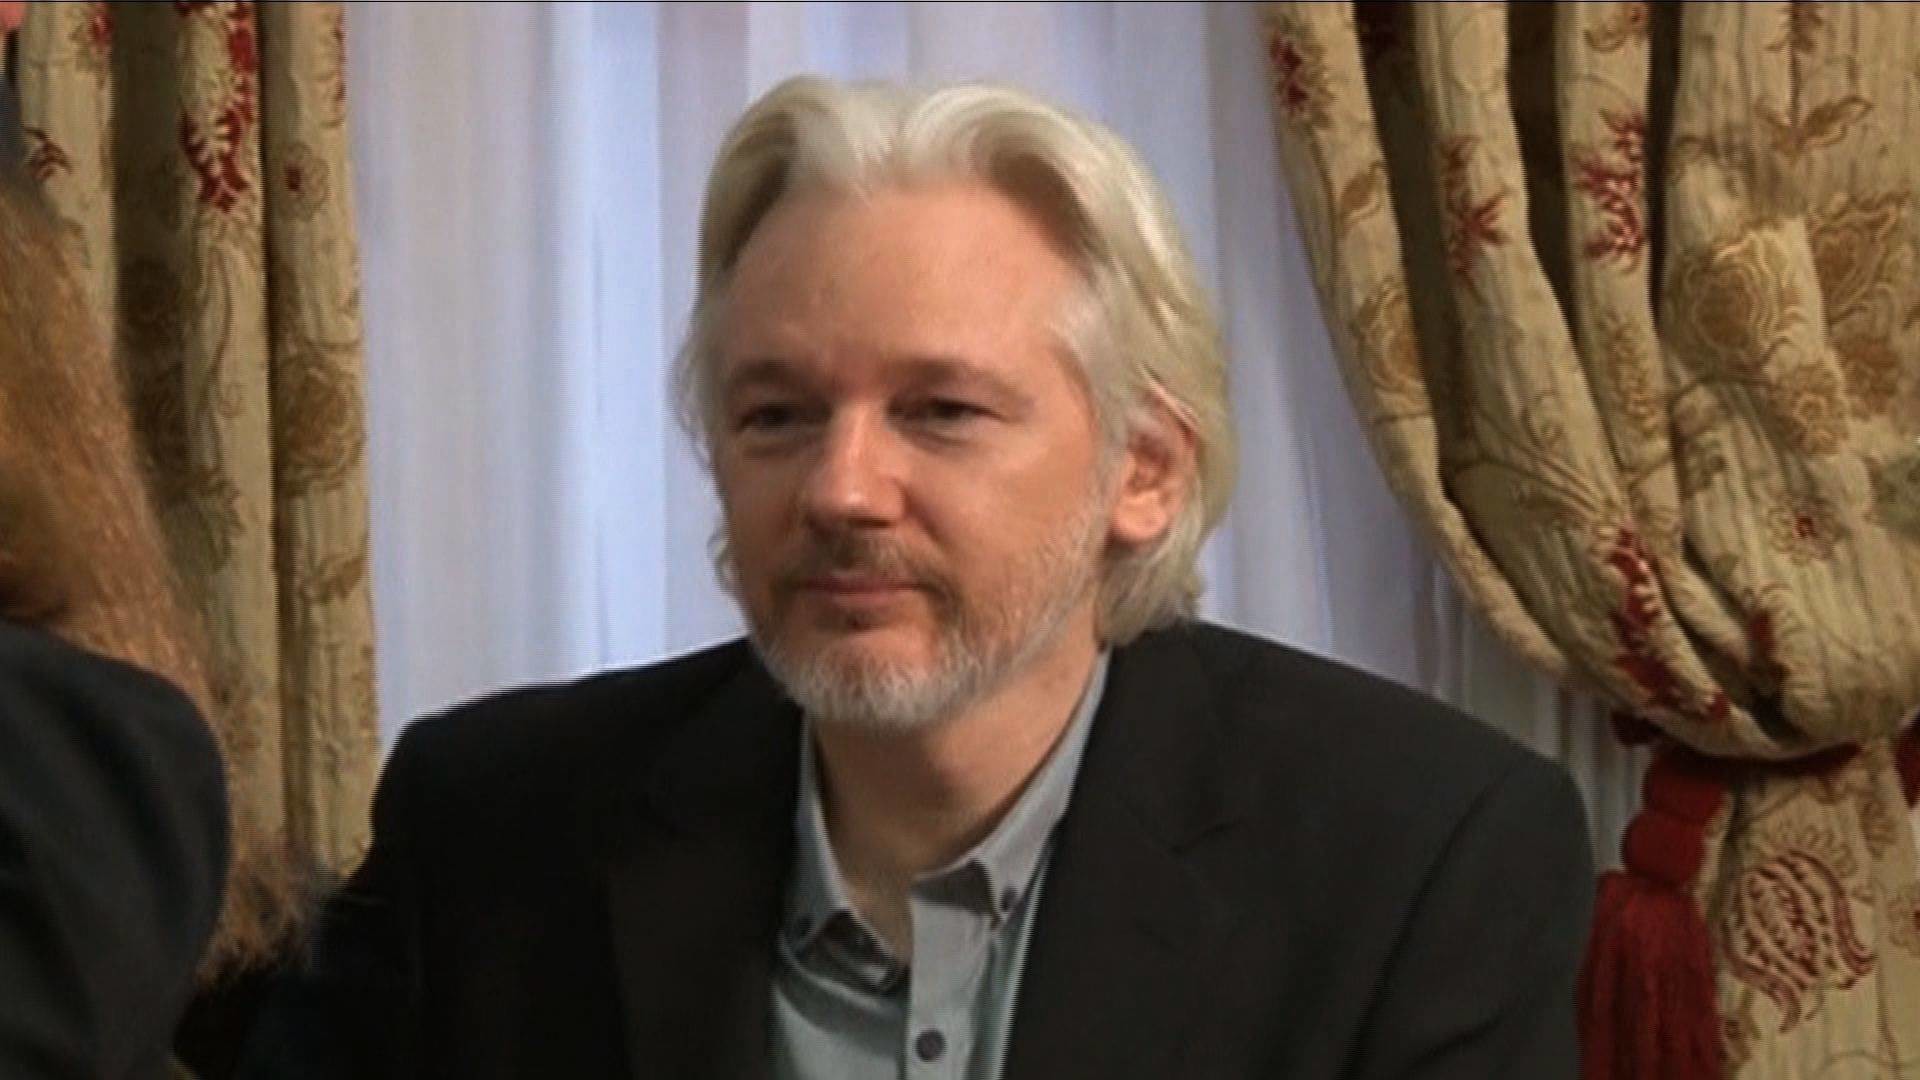 1920x1080 CNN: Trump Administration Seeks to Arrest WikiLeaks's Julian Assange |  Democracy Now!